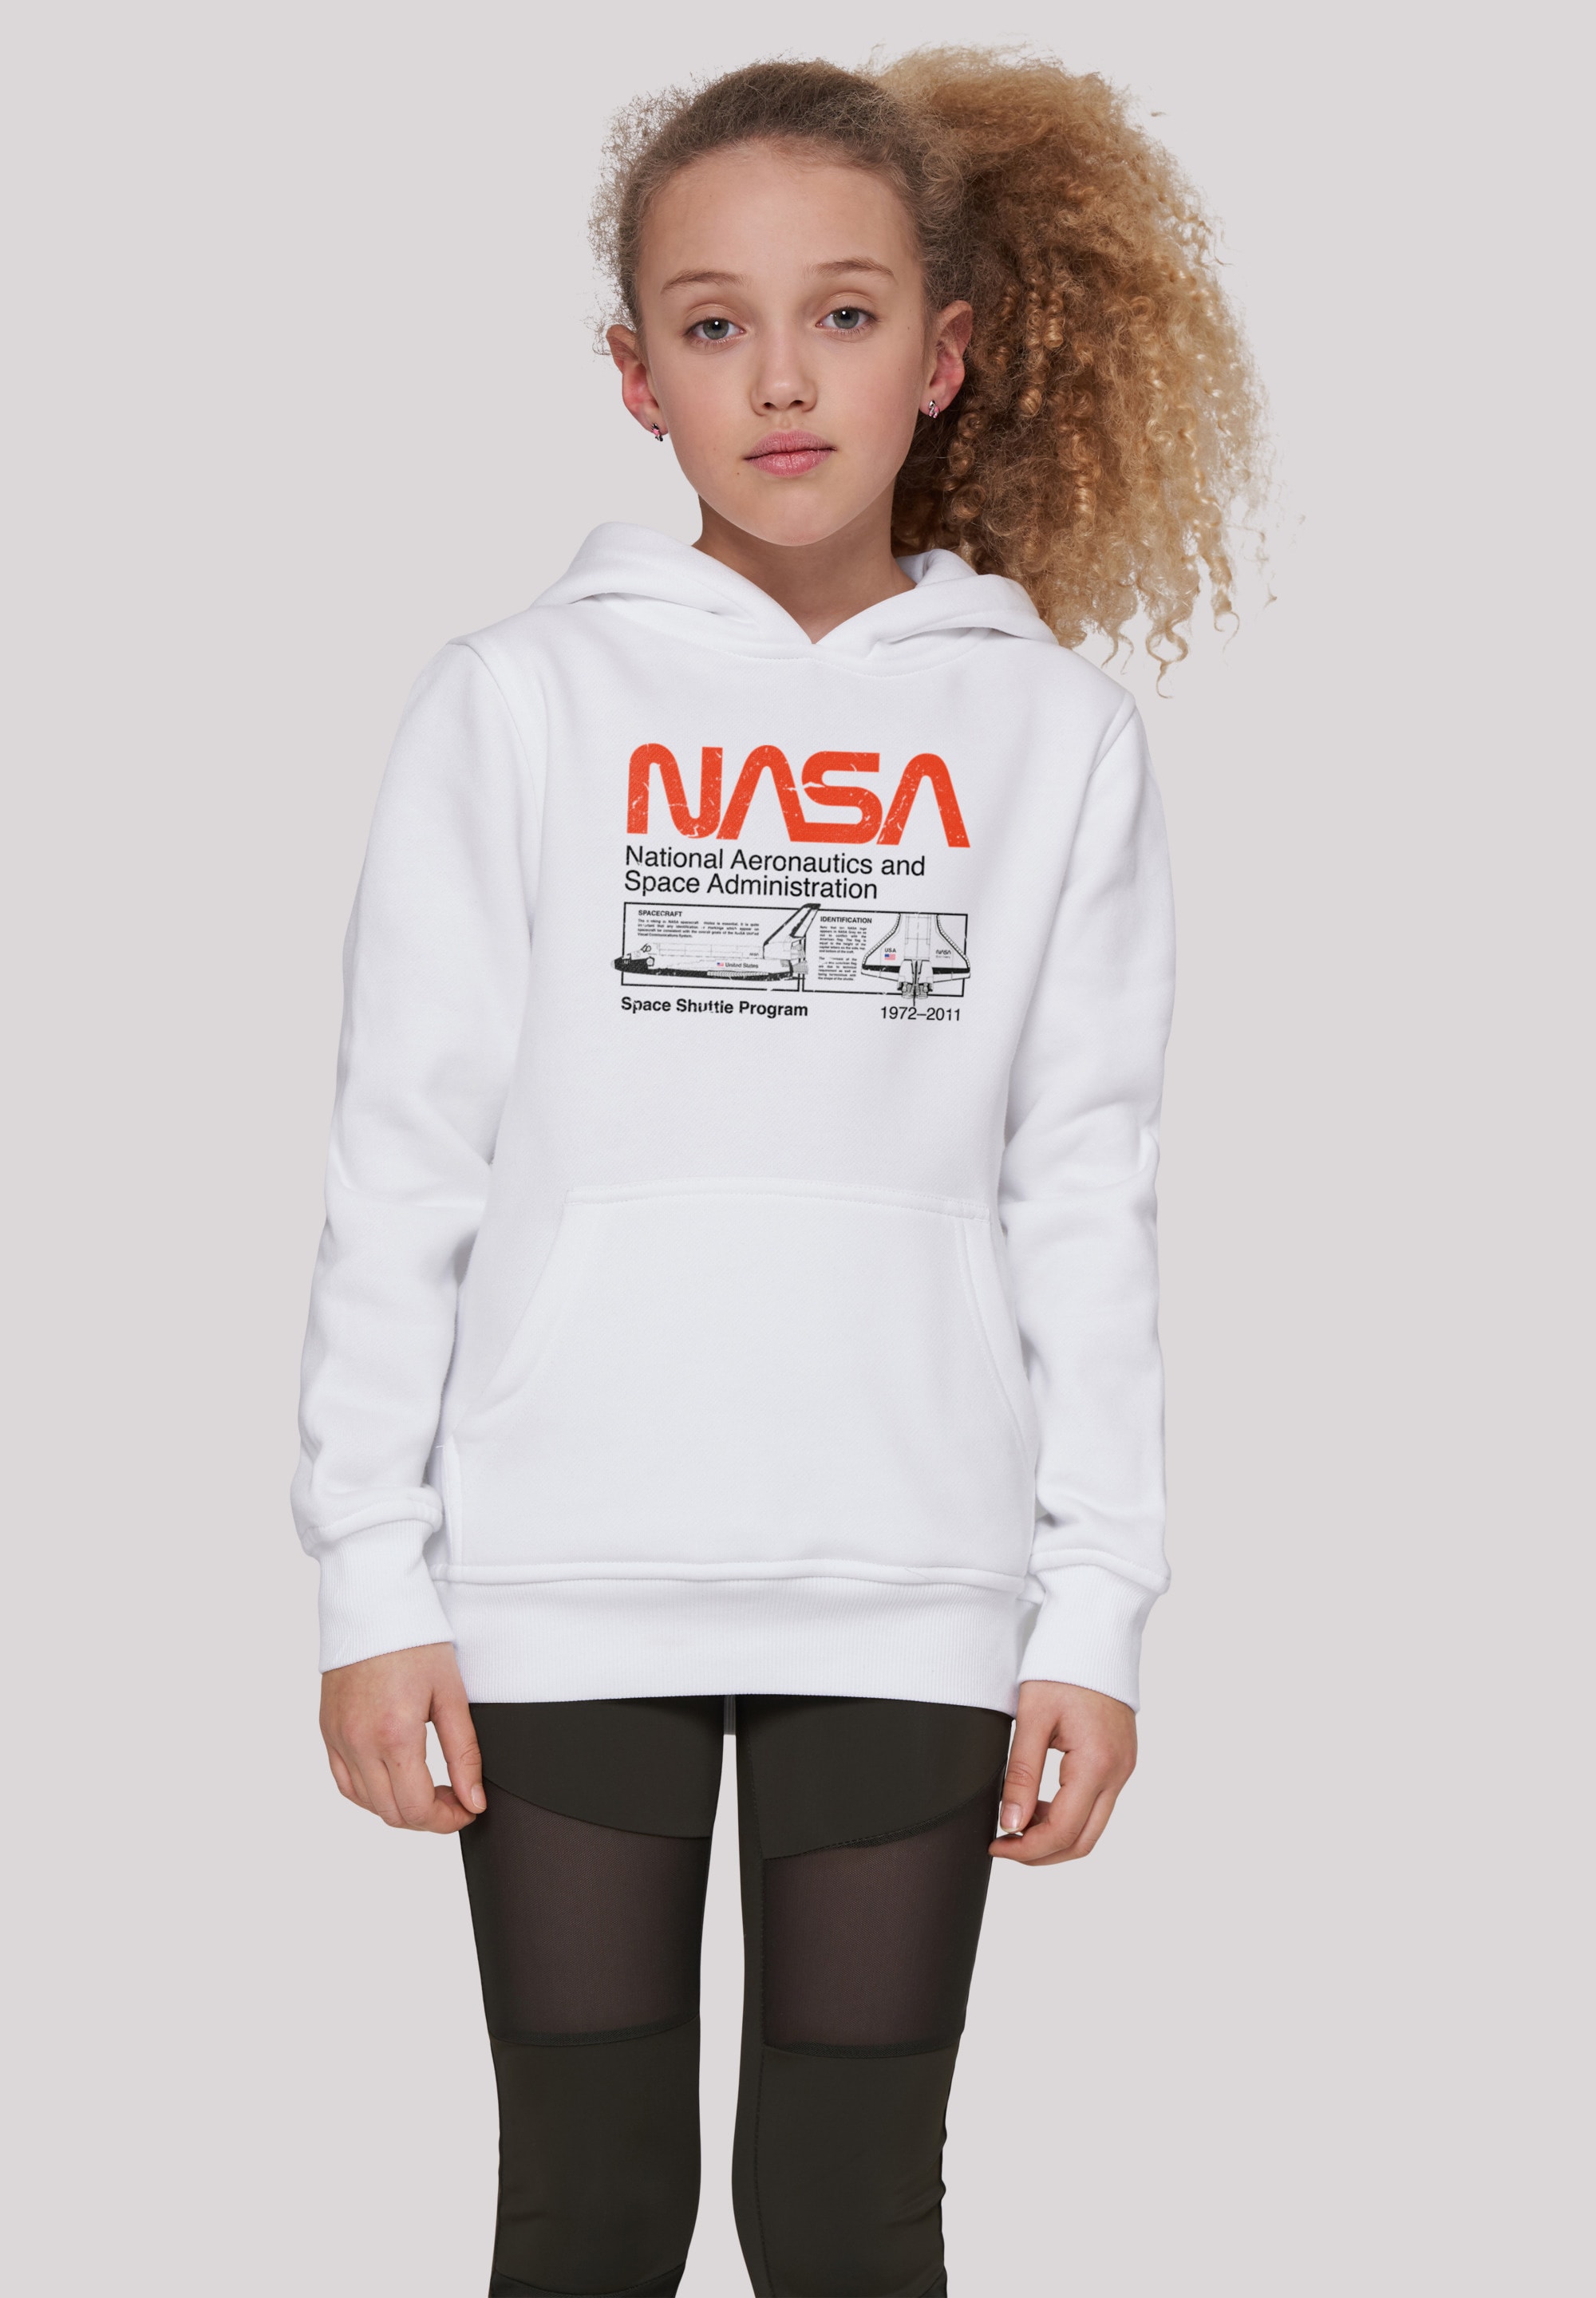 Black BAUR Classic Merch,Jungen,Mädchen,Bedruckt Friday Space Kinder,Premium Unisex F4NT4STIC Shuttle Sweatshirt | White«, »NASA